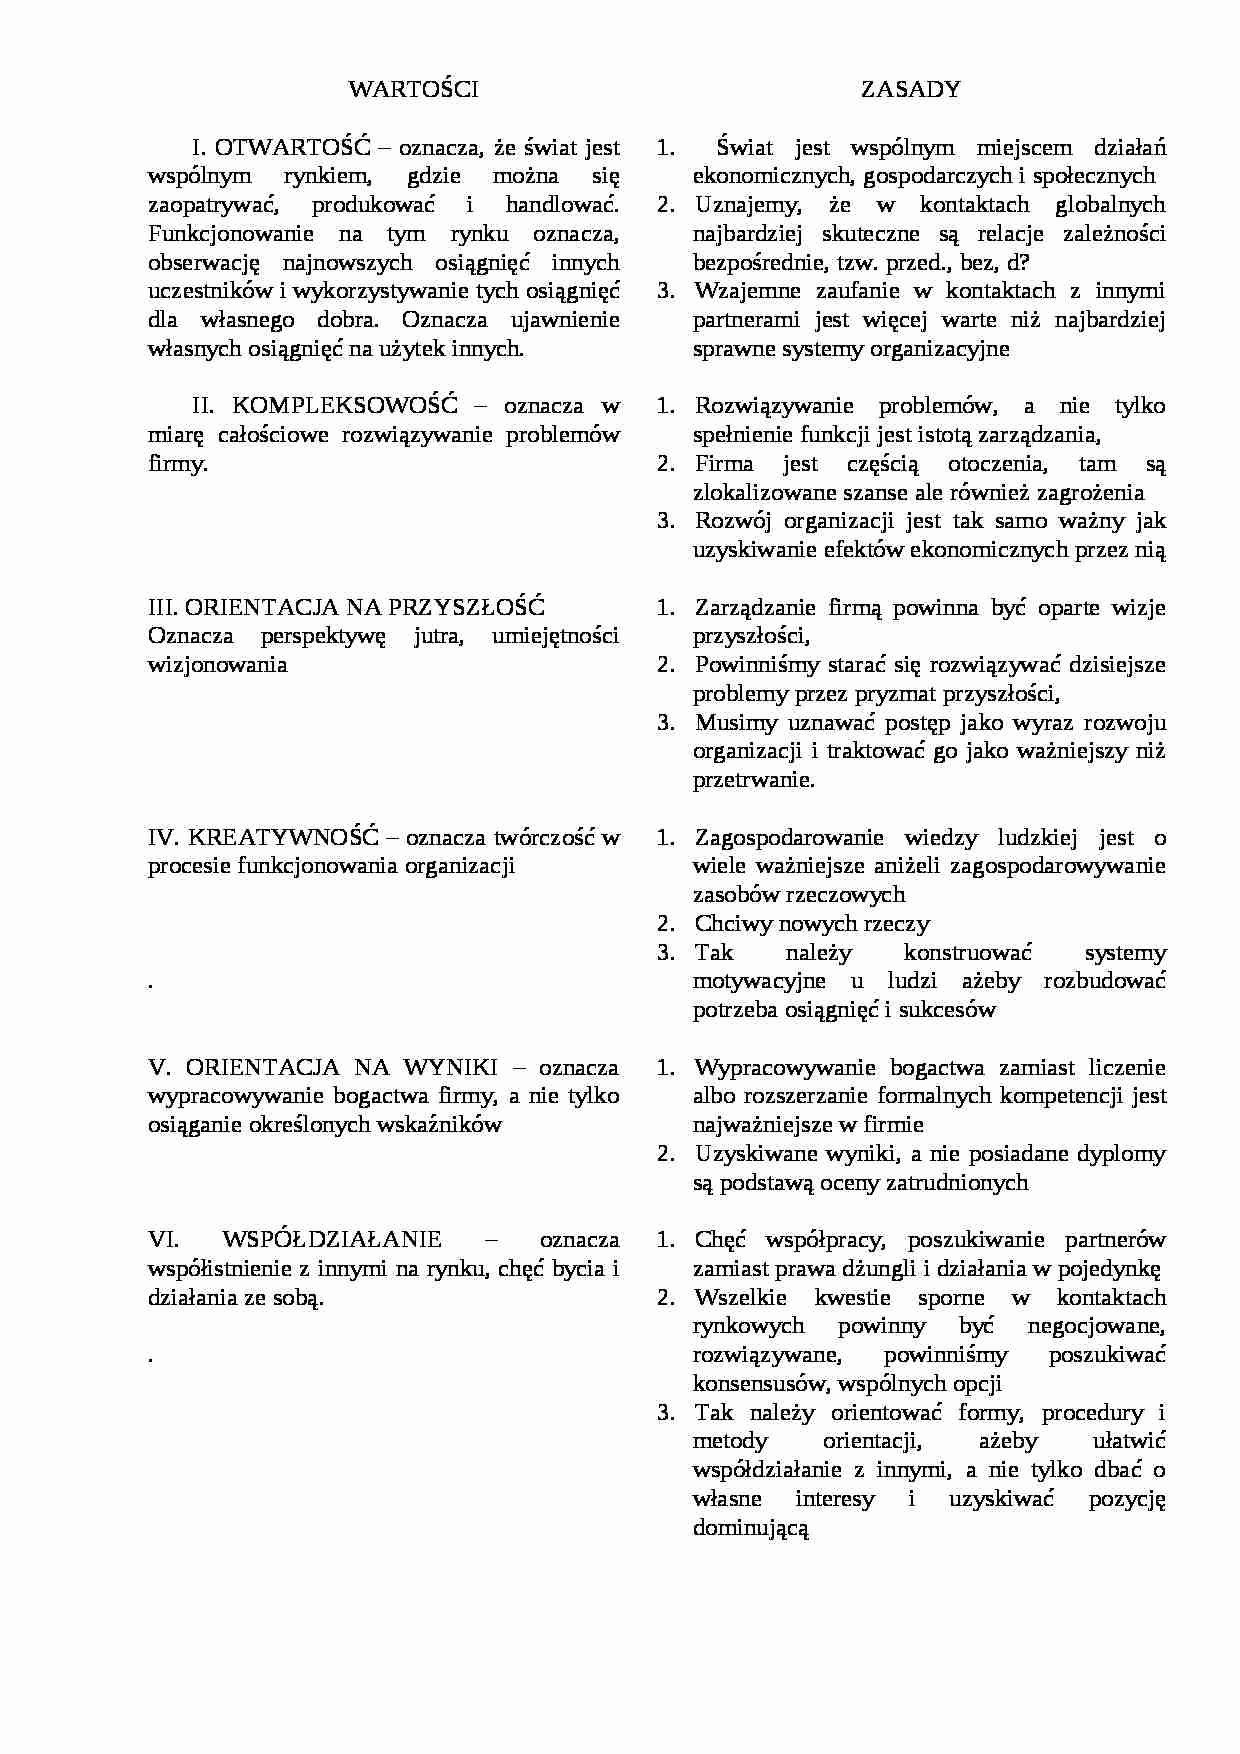 Katalog wartości i zasad ZS - strona 1